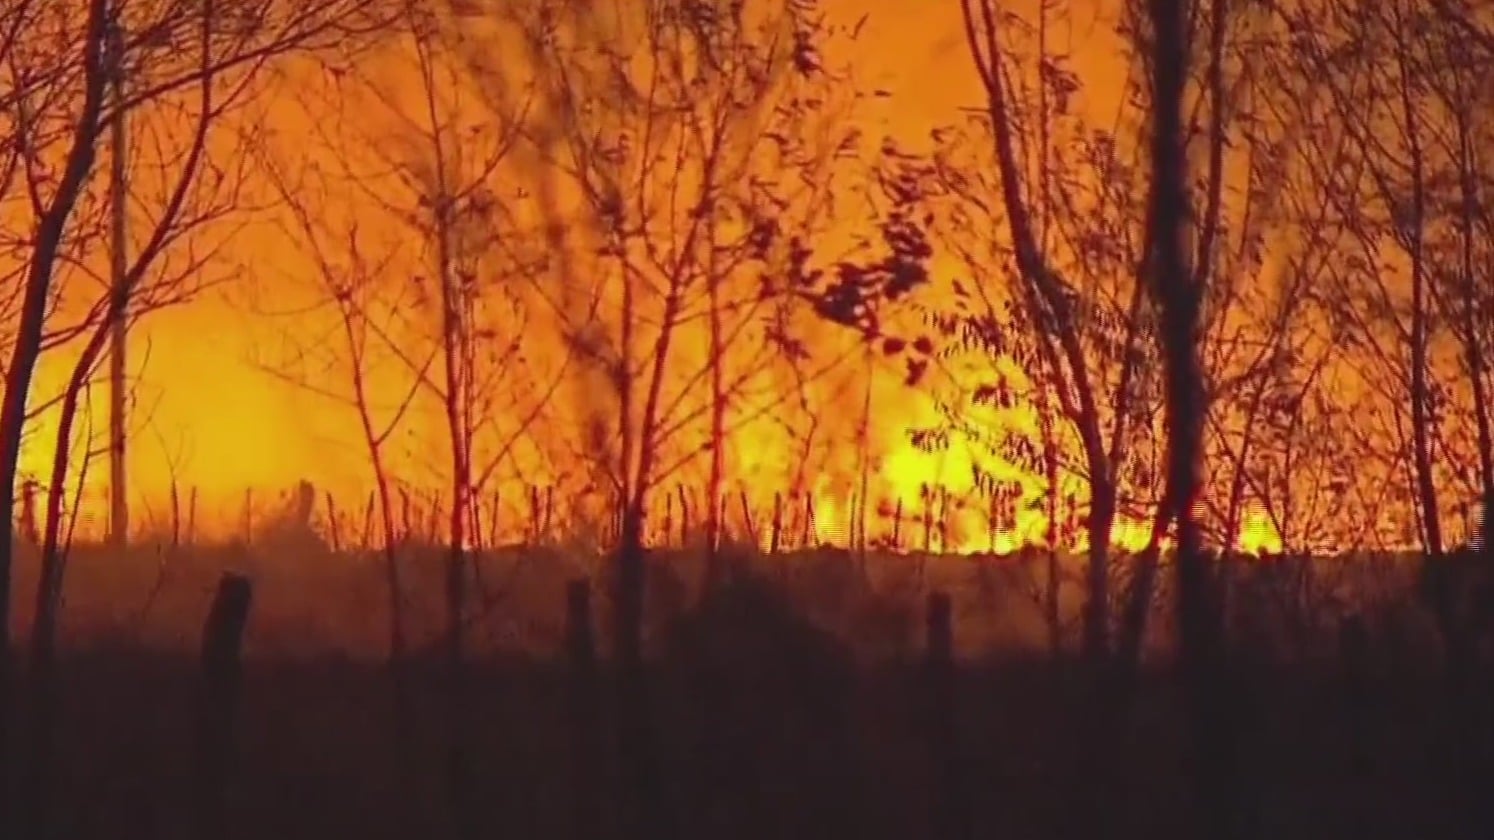 incendios forestales arrasan con miles de hectareas en argentina